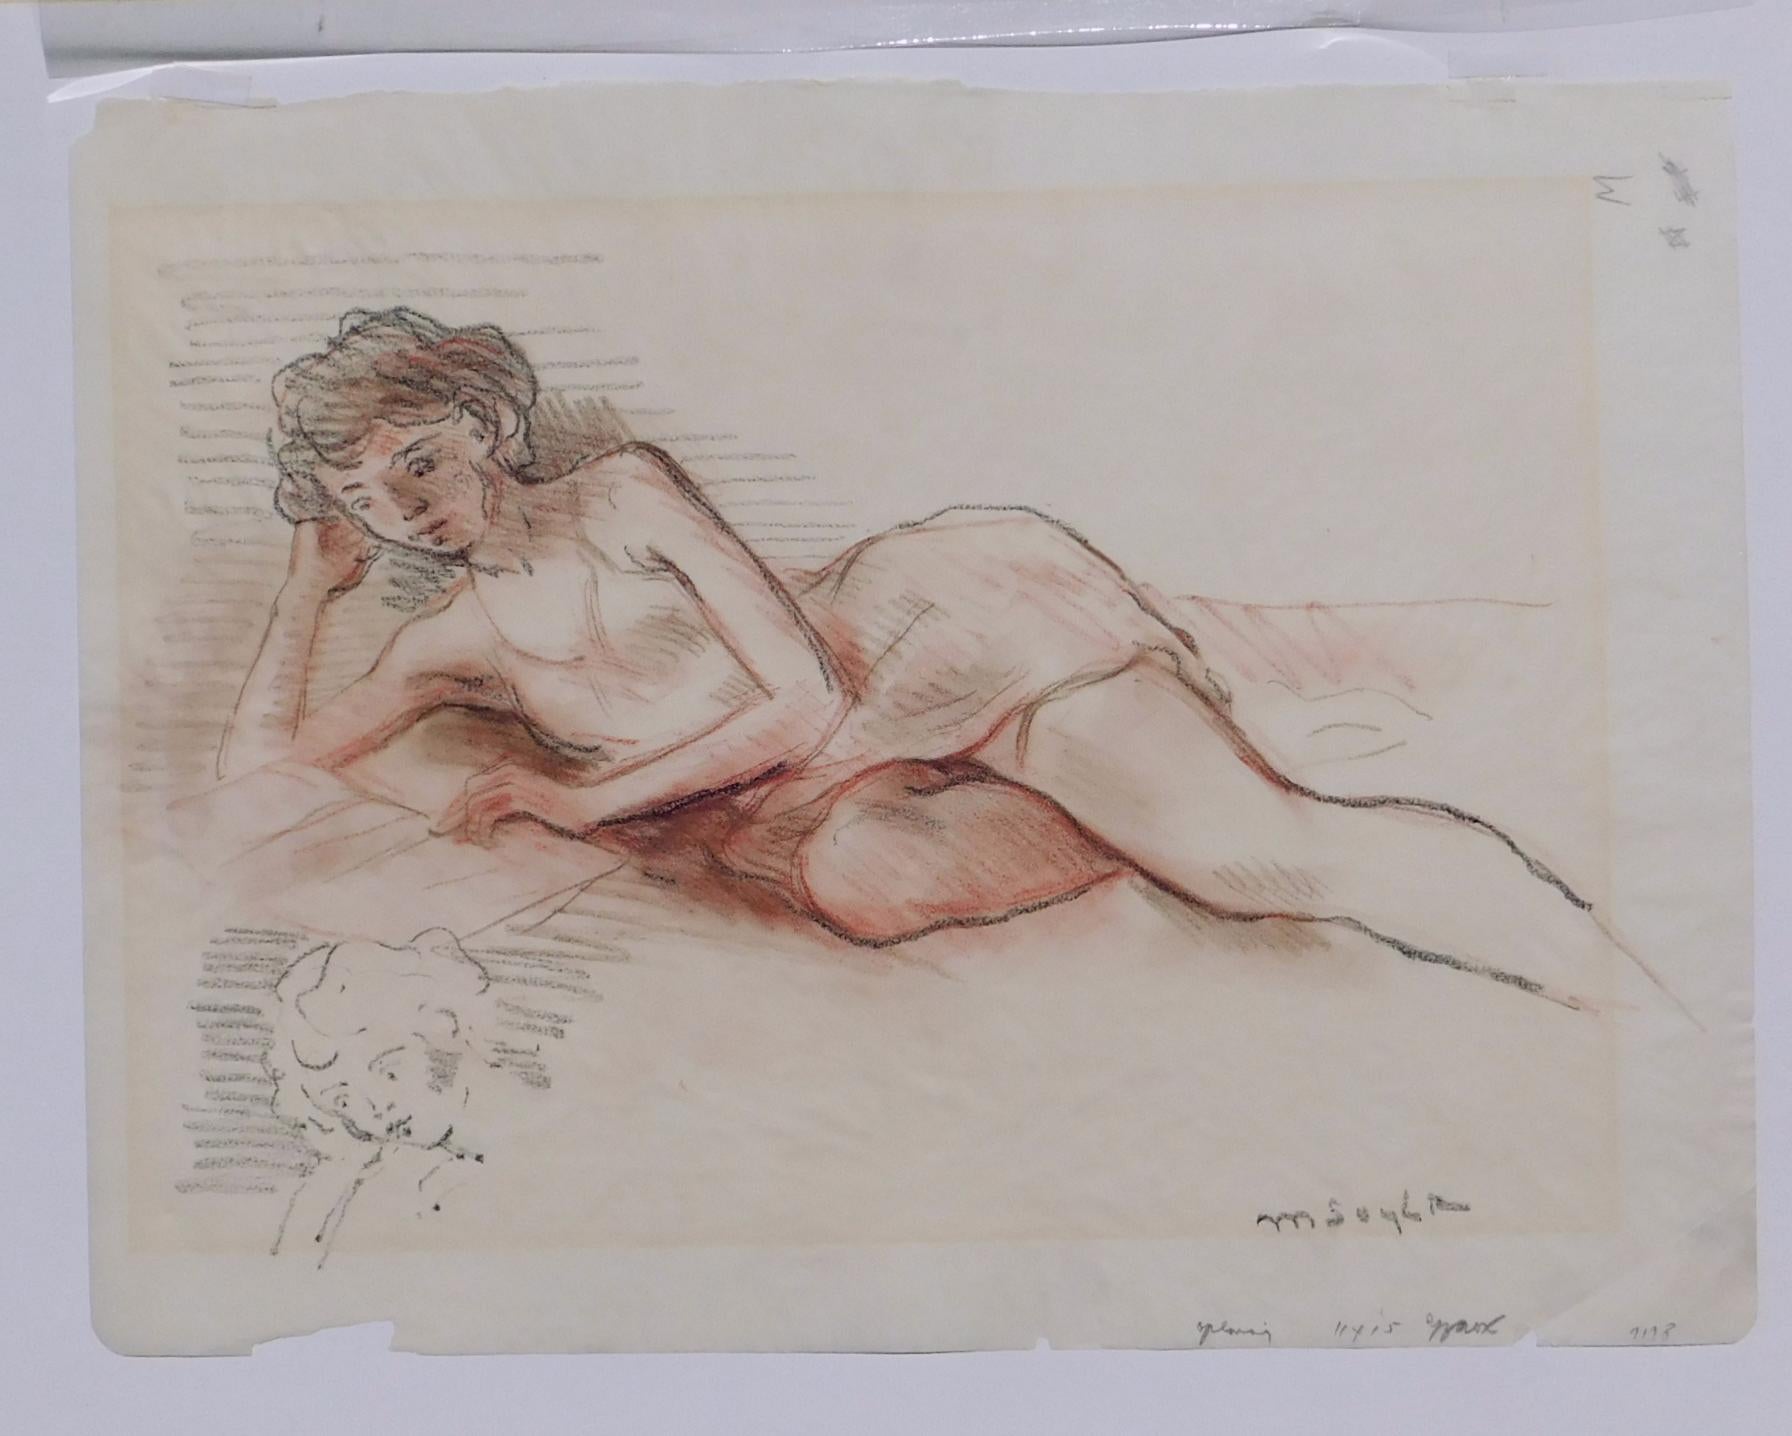 Dessin original de Moïse (1899-1974), frère jumeau de Raphael Soyer, représentant une femme au repos.
L'œuvre est signée par l'artiste en bas à droite et est réalisée au crayon de couleur et à la mine de plomb.
Il est dépourvu de cadre et en